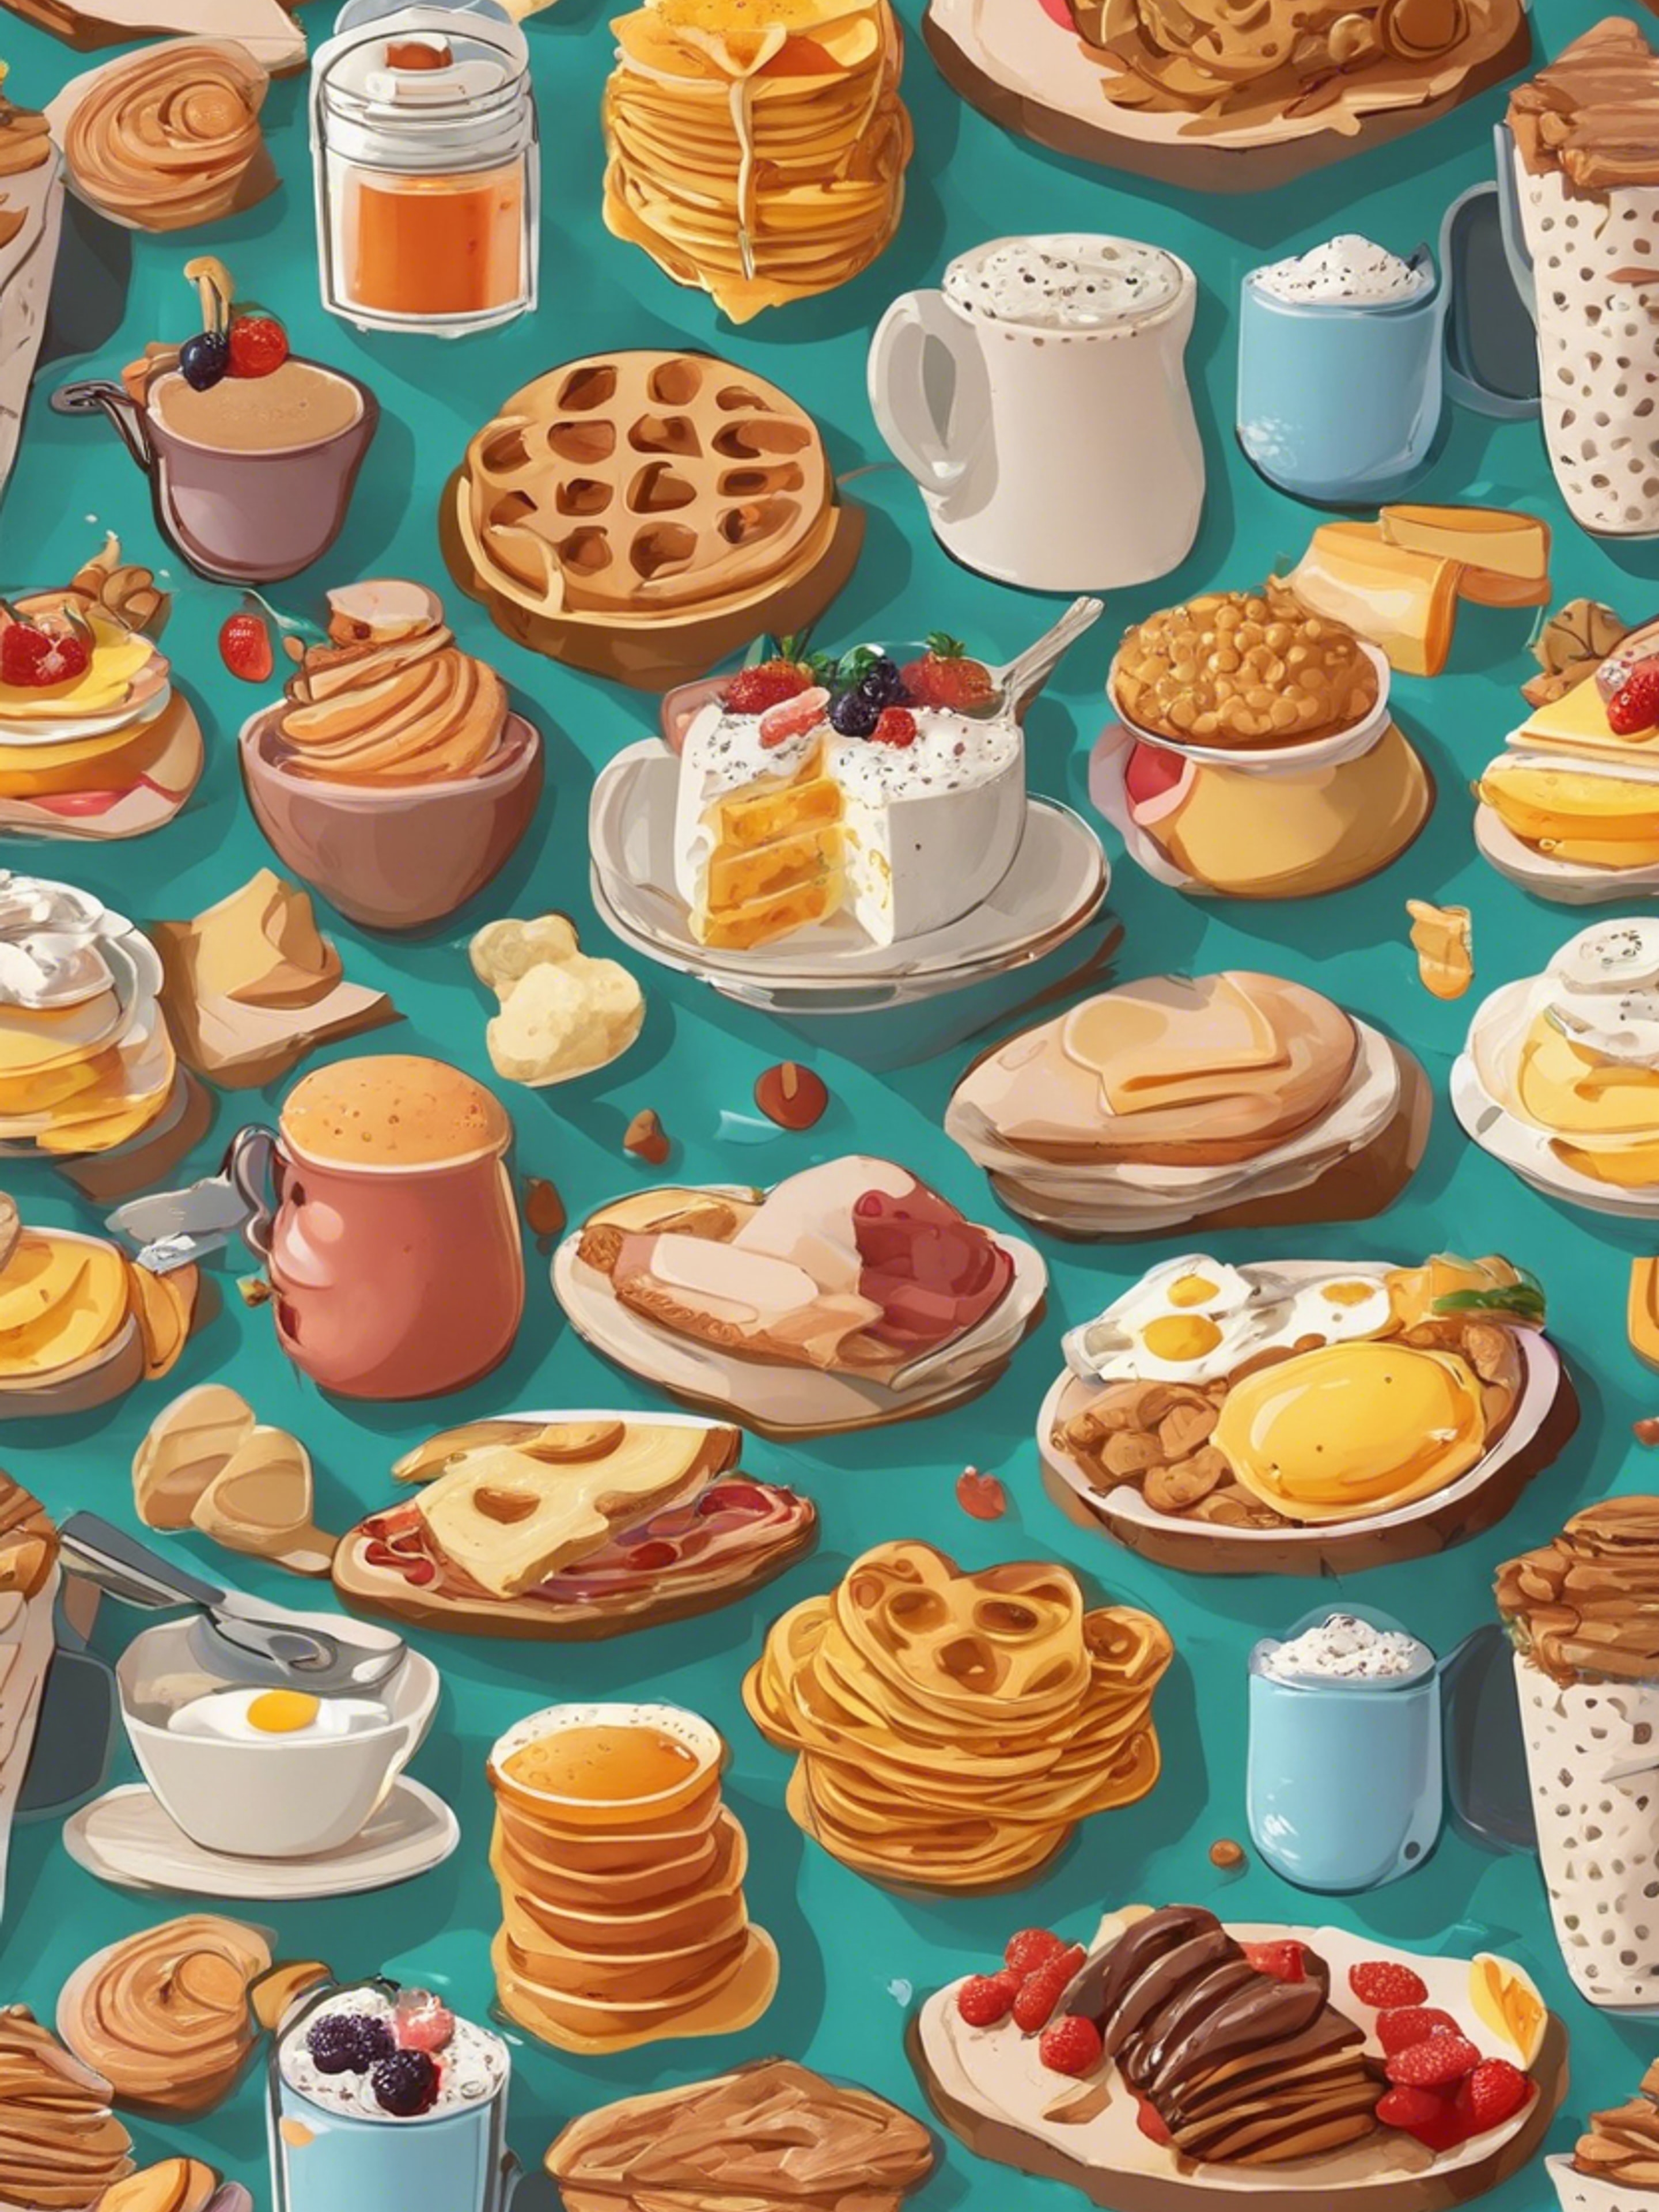 Cartoonish breakfast food items in an appealing, kid-friendly pattern. Tapet[fa493d8b255444e69f8d]